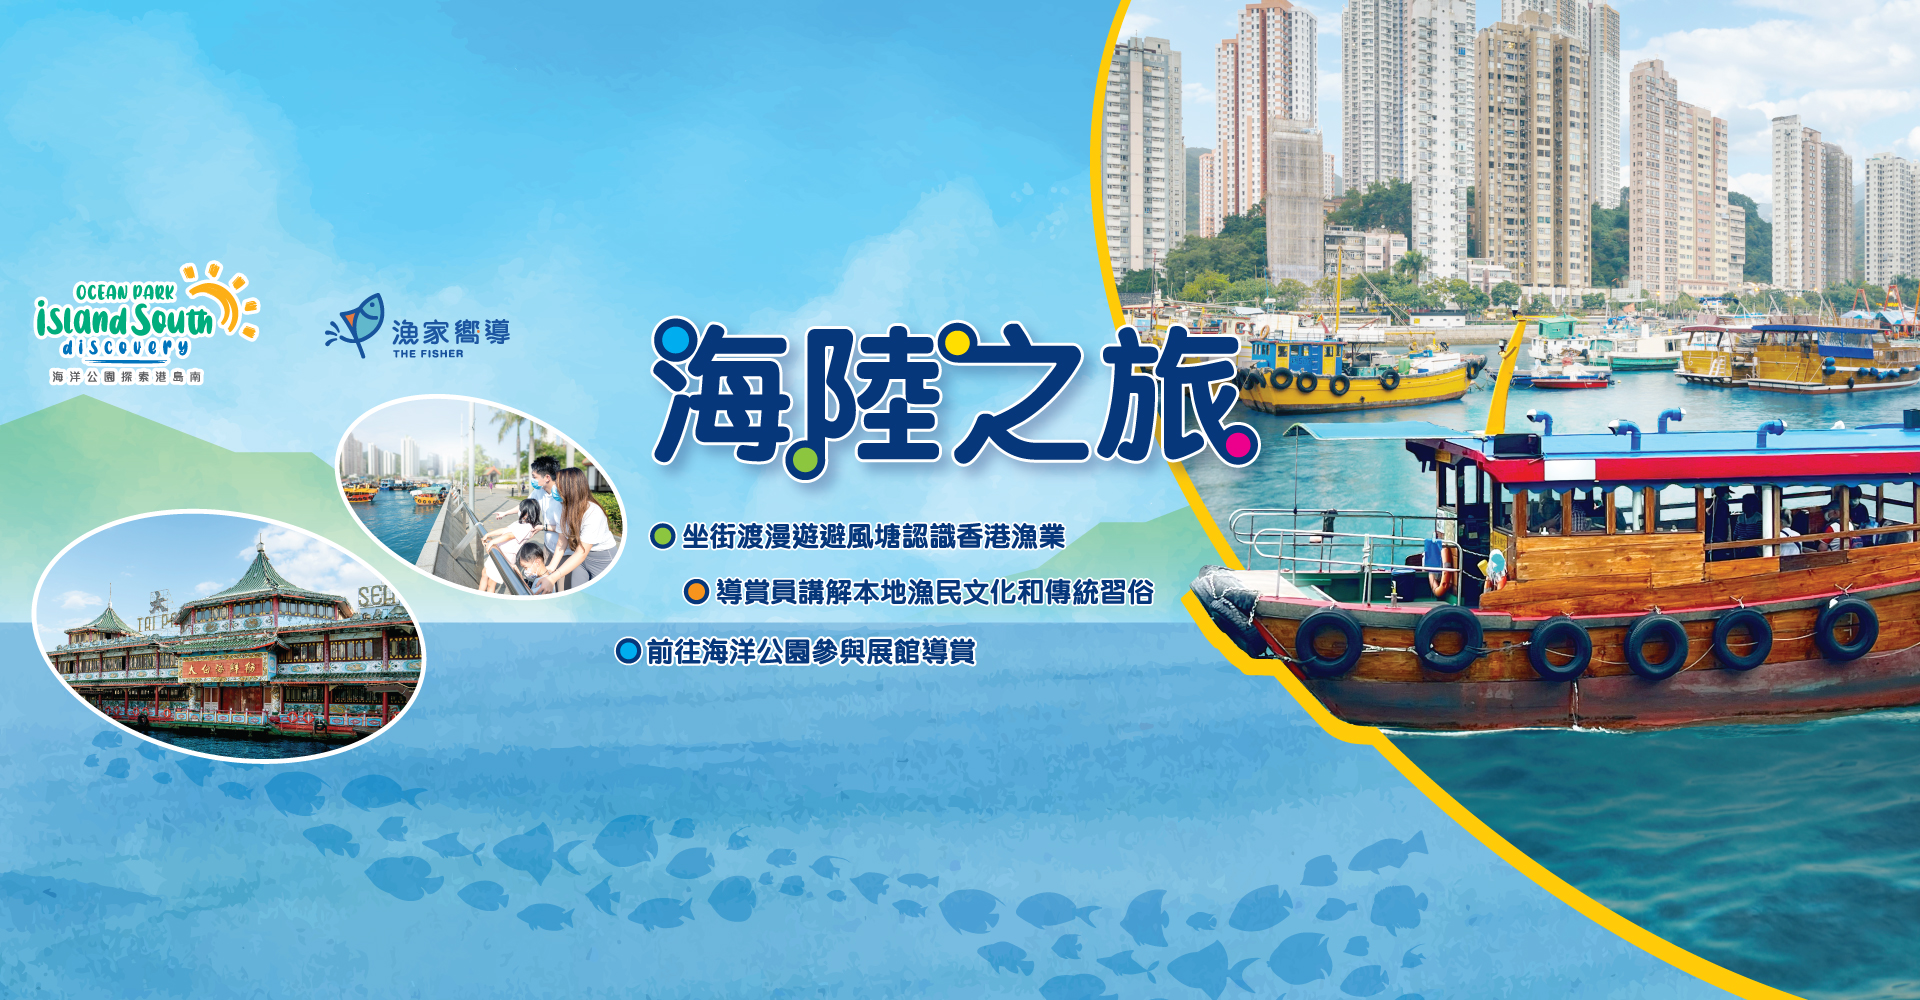 https://media.oceanpark.com.hk/files/s3fs-public/land-sea-guided-tour-innerpage-banner-desktop-tc.jpg